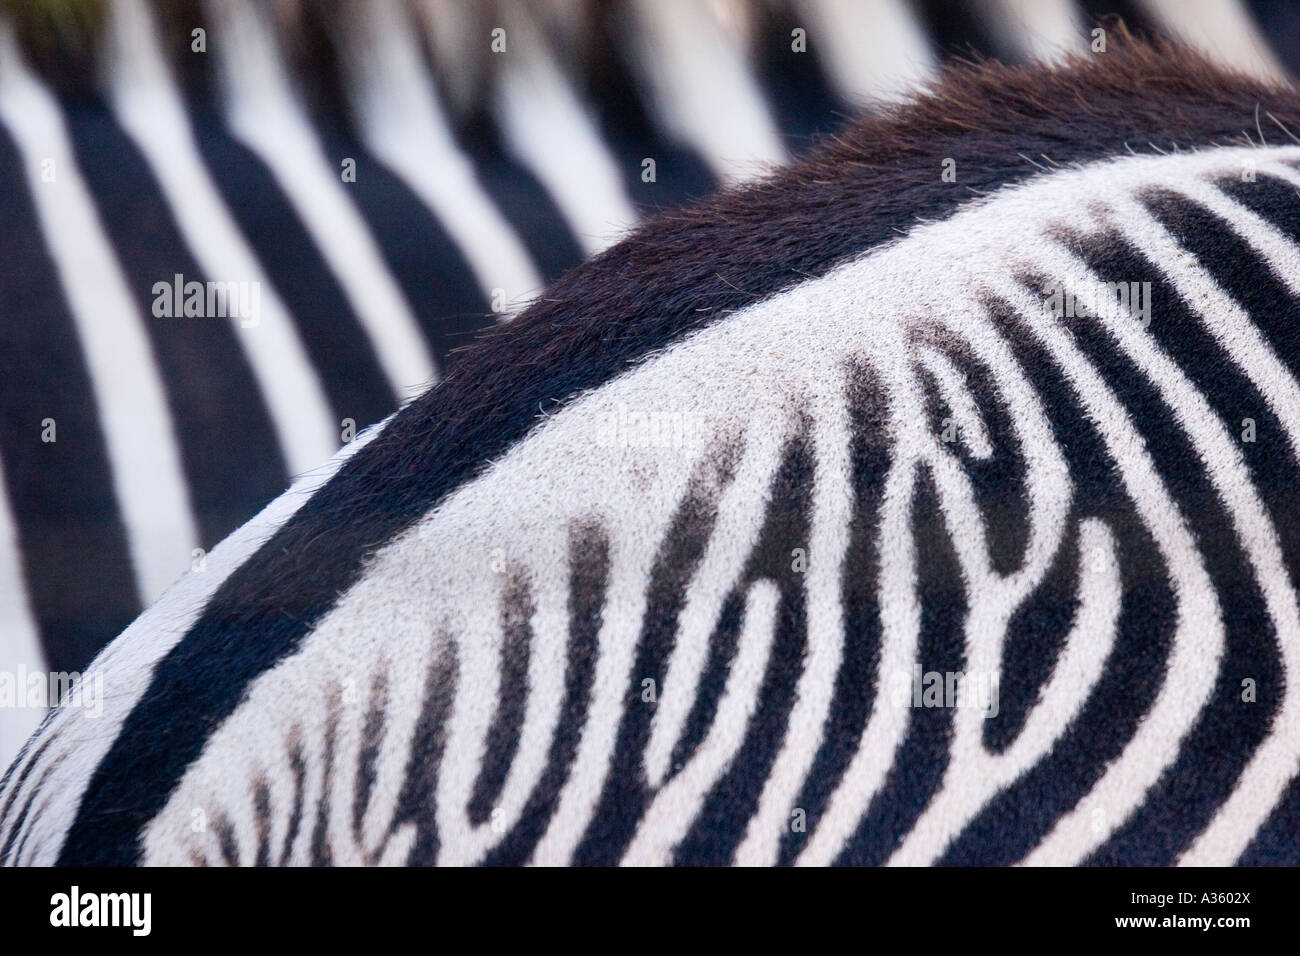 Le strisce di due zebre crea un motivo bianco e nero quando visto da vicino. Foto Stock